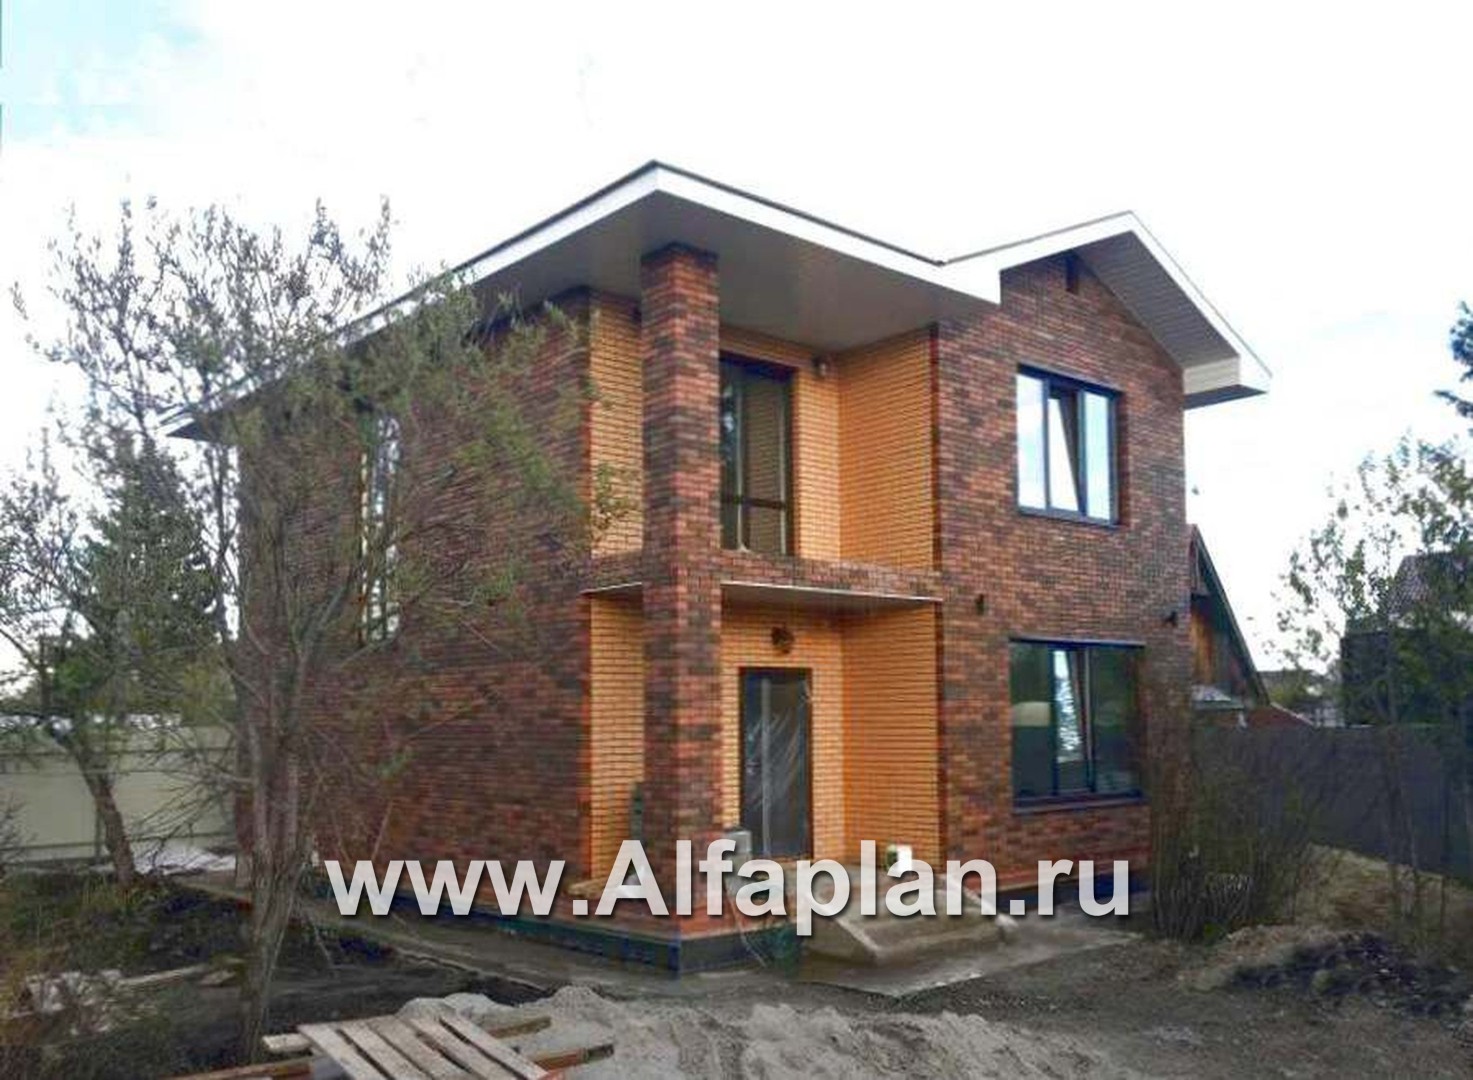 Проект двухэтажного дома из кирпича «Серебро», с террасой,  для небольшой семьи - дизайн дома №2